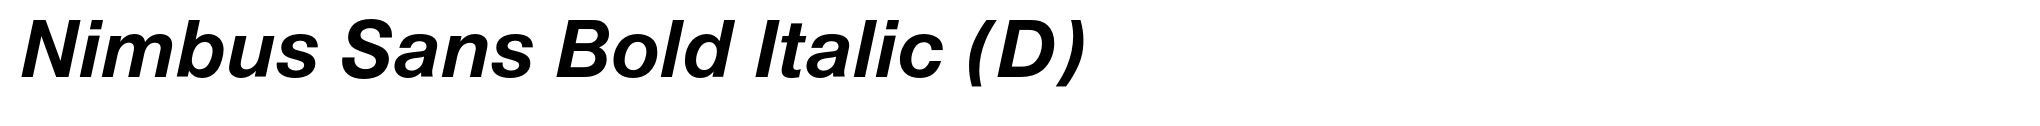 Nimbus Sans Bold Italic (D) image